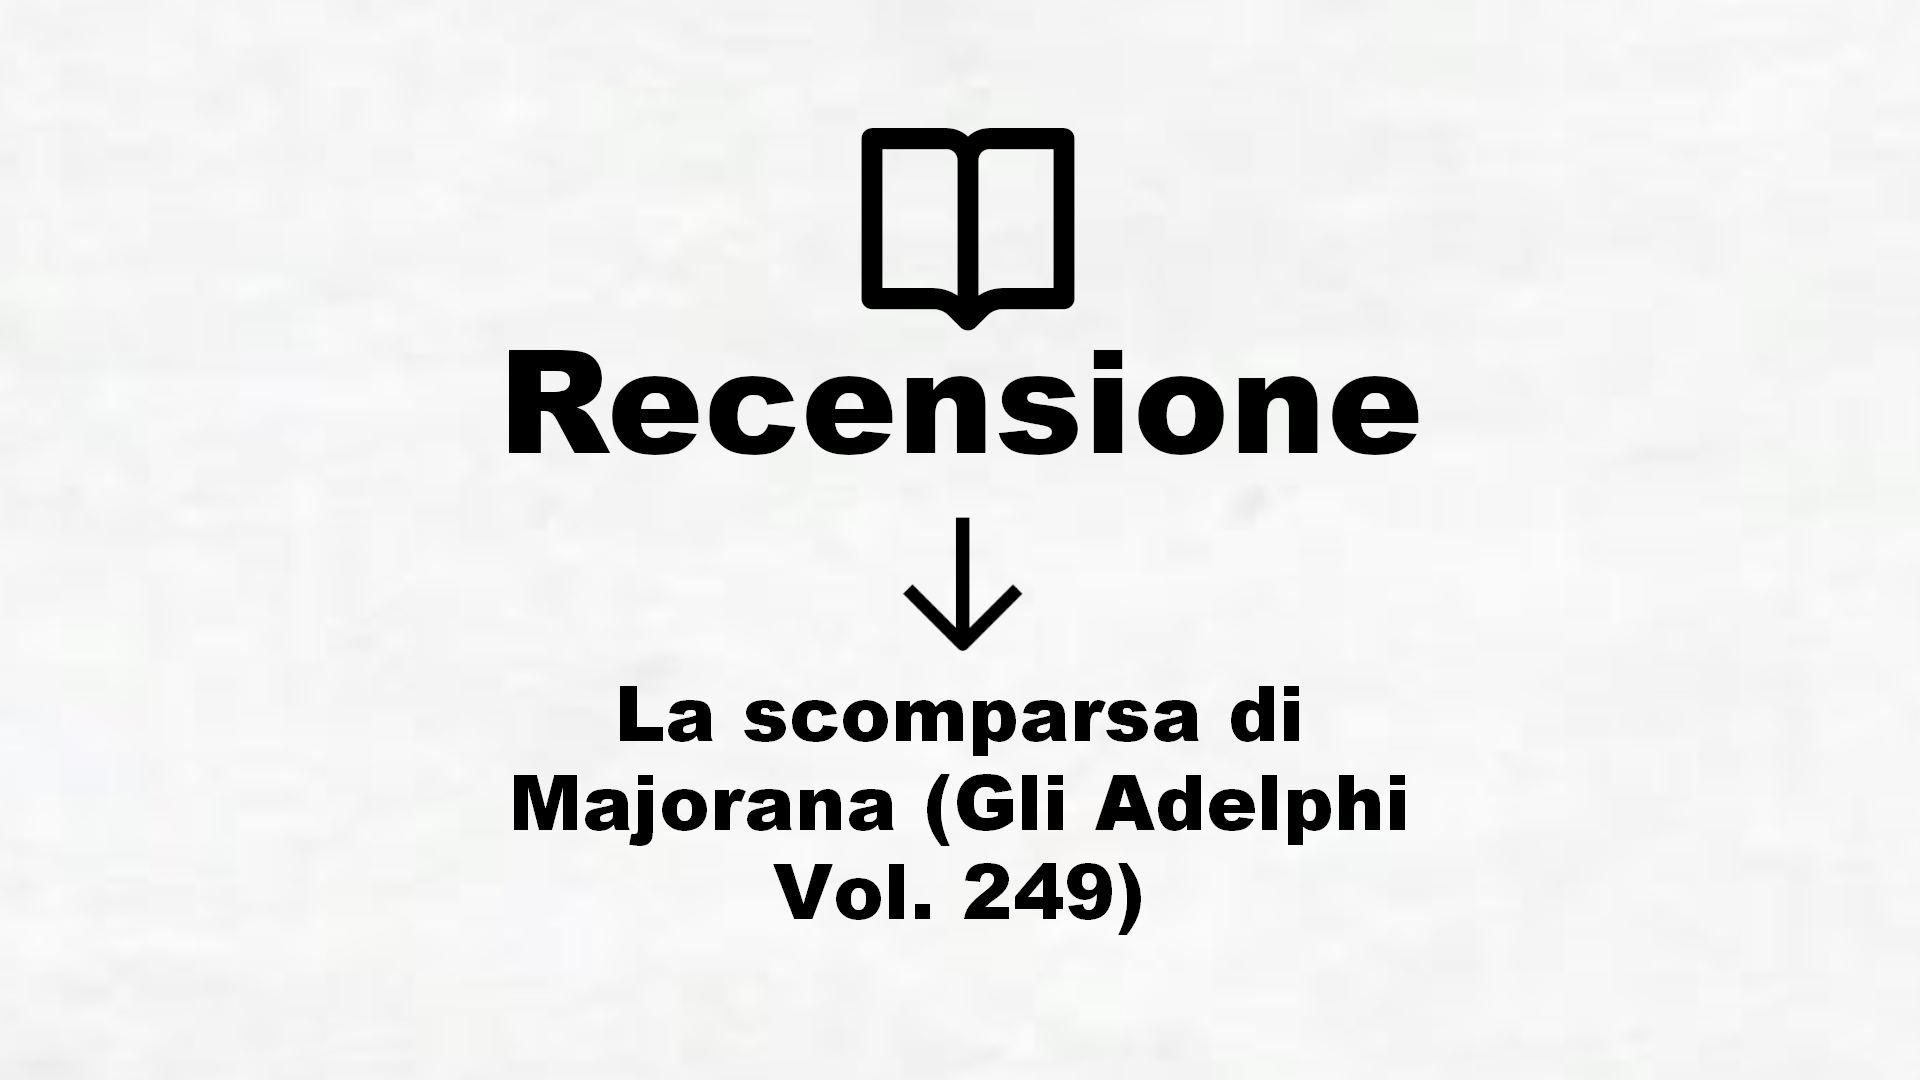 La scomparsa di Majorana (Gli Adelphi Vol. 249) – Recensione Libro